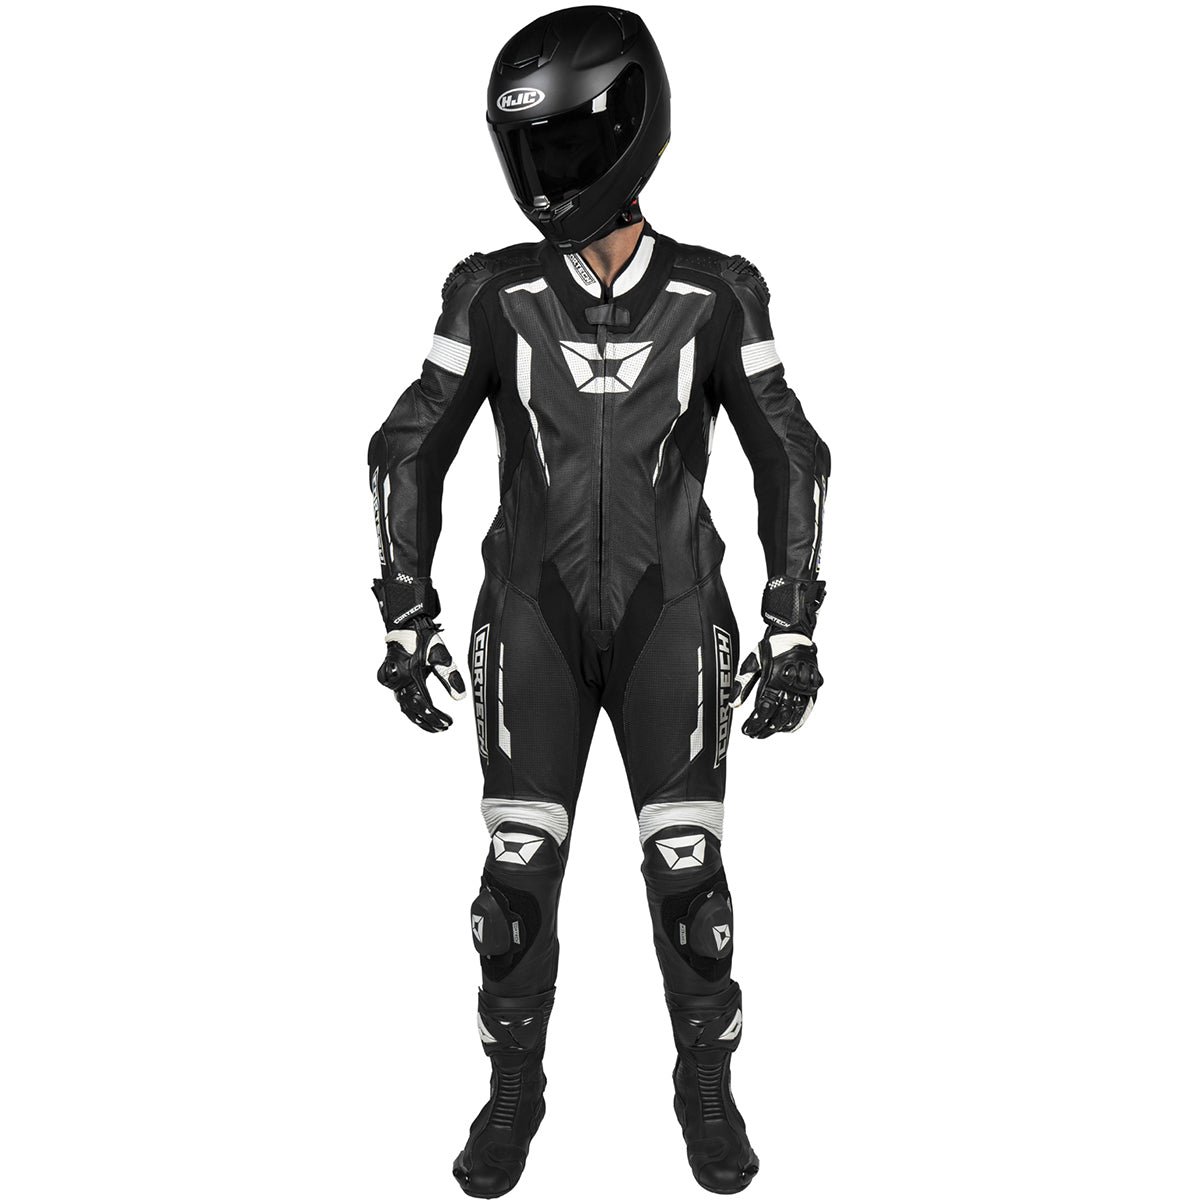 Cortech Sector Pro Air-1 Leather Suit 1-Piece Men's Street Race Suits-8870